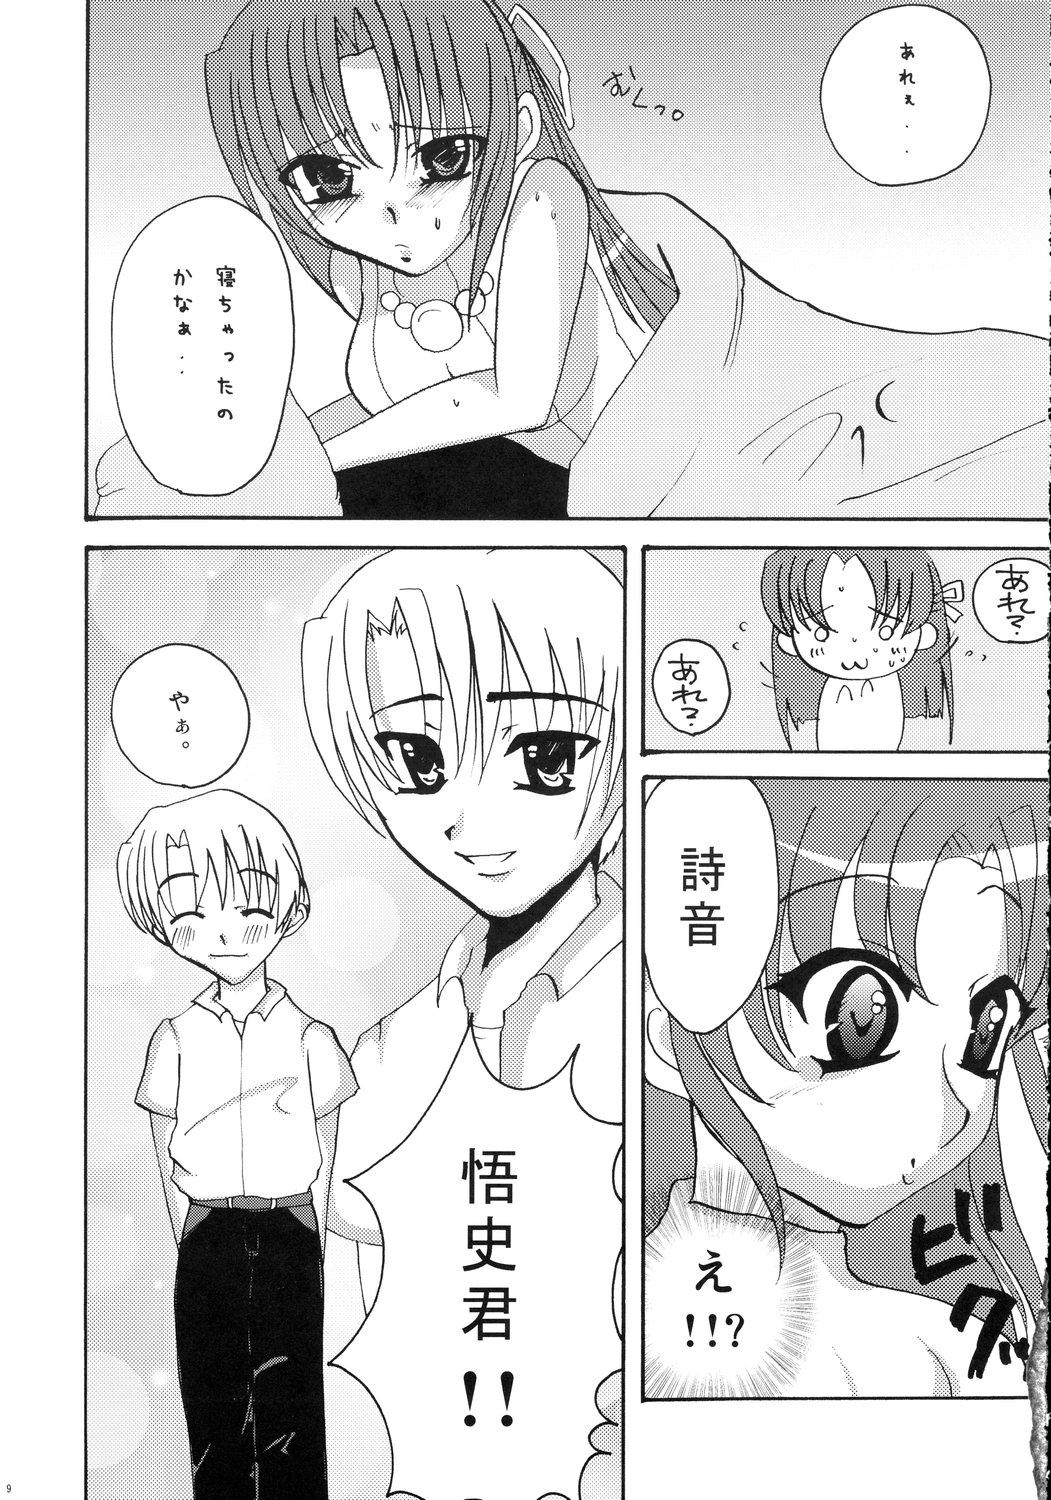 Mamando Kiss Rock - Higurashi no naku koro ni Gays - Page 9